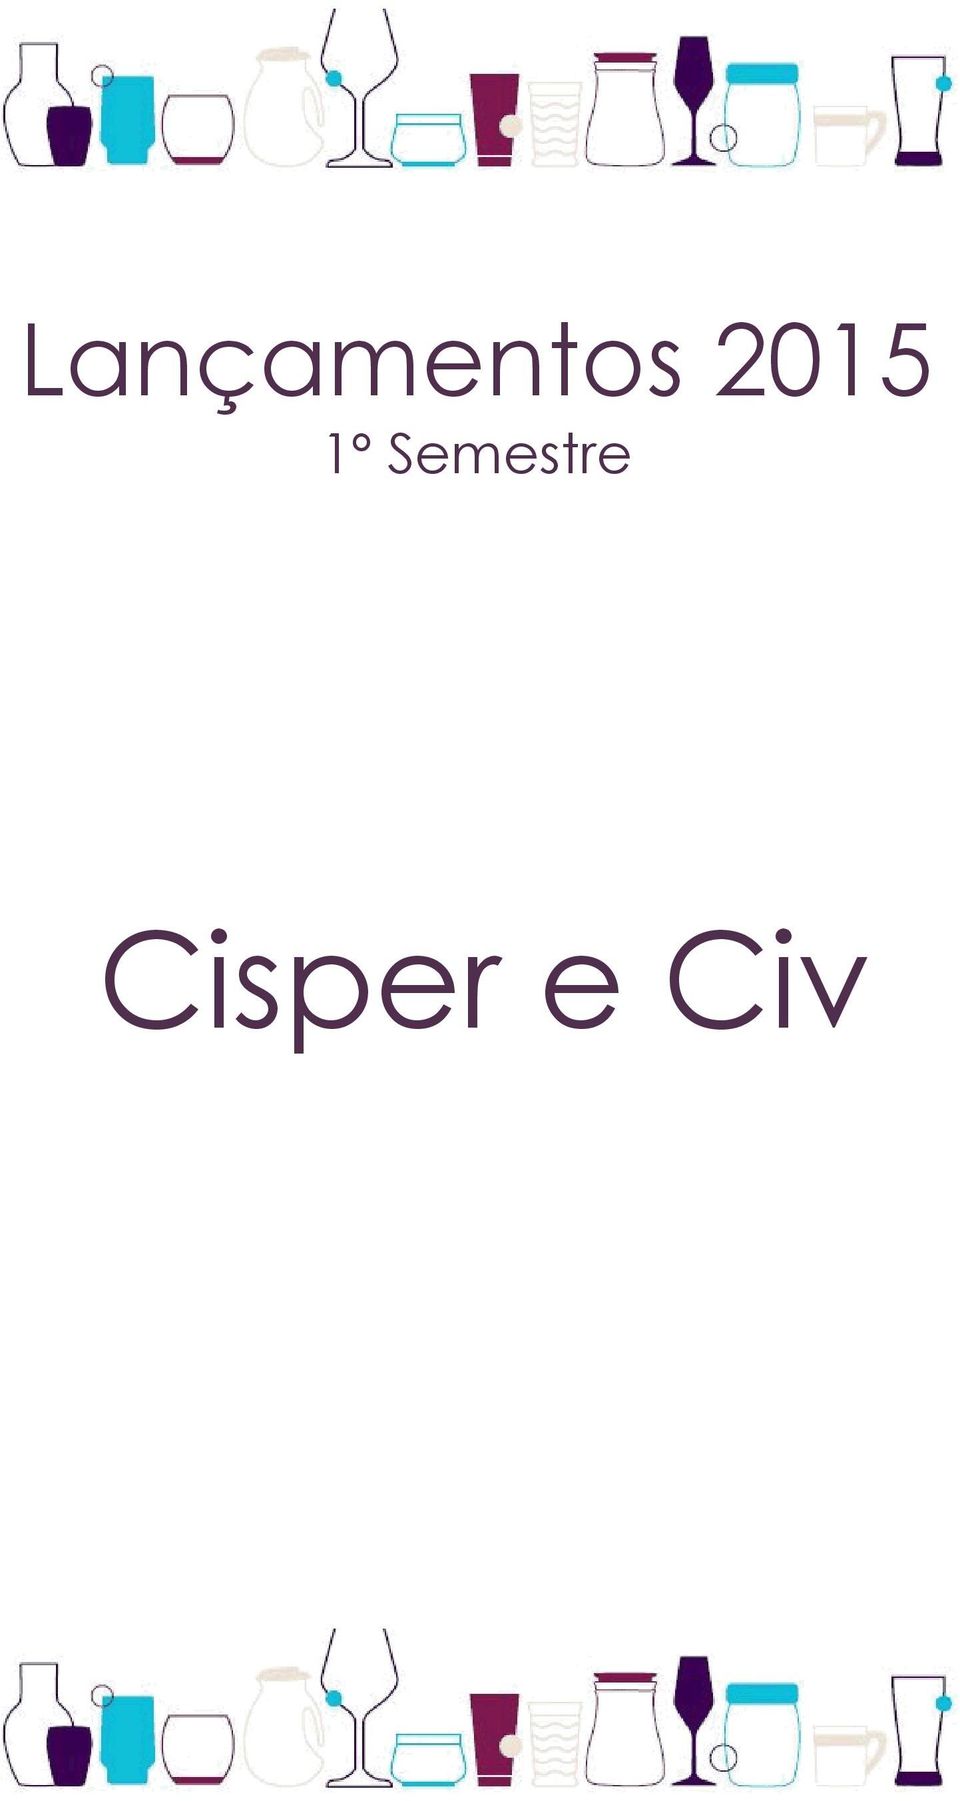 Cisper e